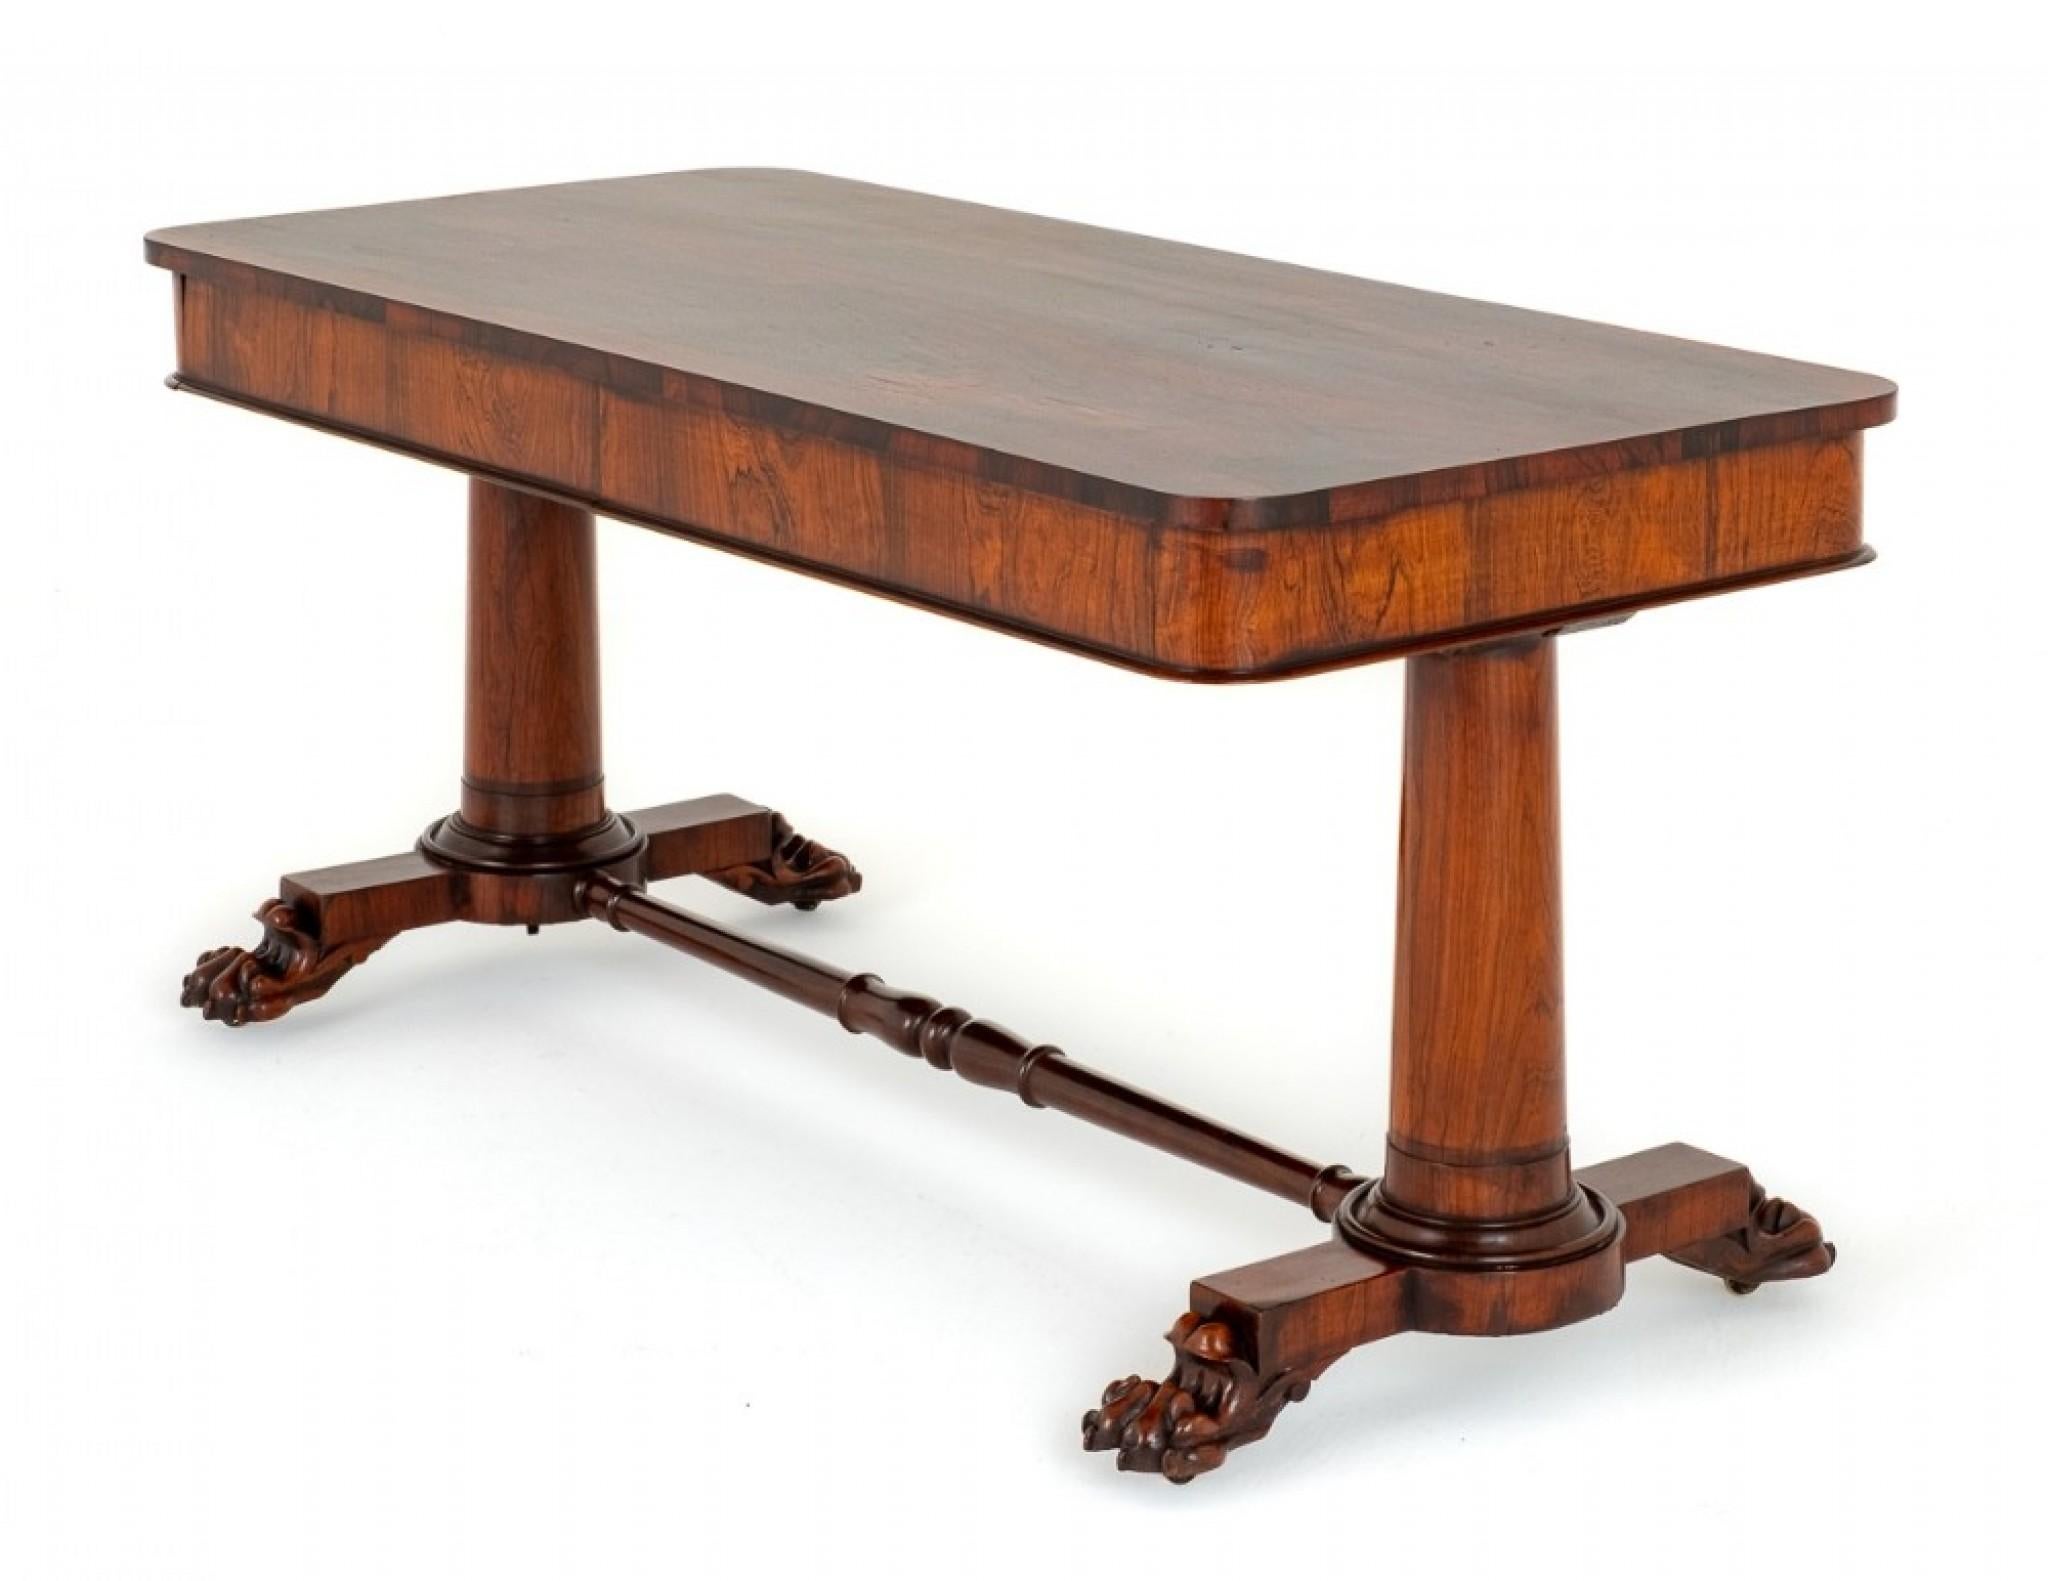 William IV Bibliothekstisch.
CIRCA 19. Jahrhundert
Die Tischplatte ist mit wundervollen Rio-Palisanderhölzern ausgestattet.
Der Tisch mit 2 funktionierenden Schubladen aus Mahagoni (beachten Sie die feinen Schwalbenschwänze)
Die Tabelle ist gut